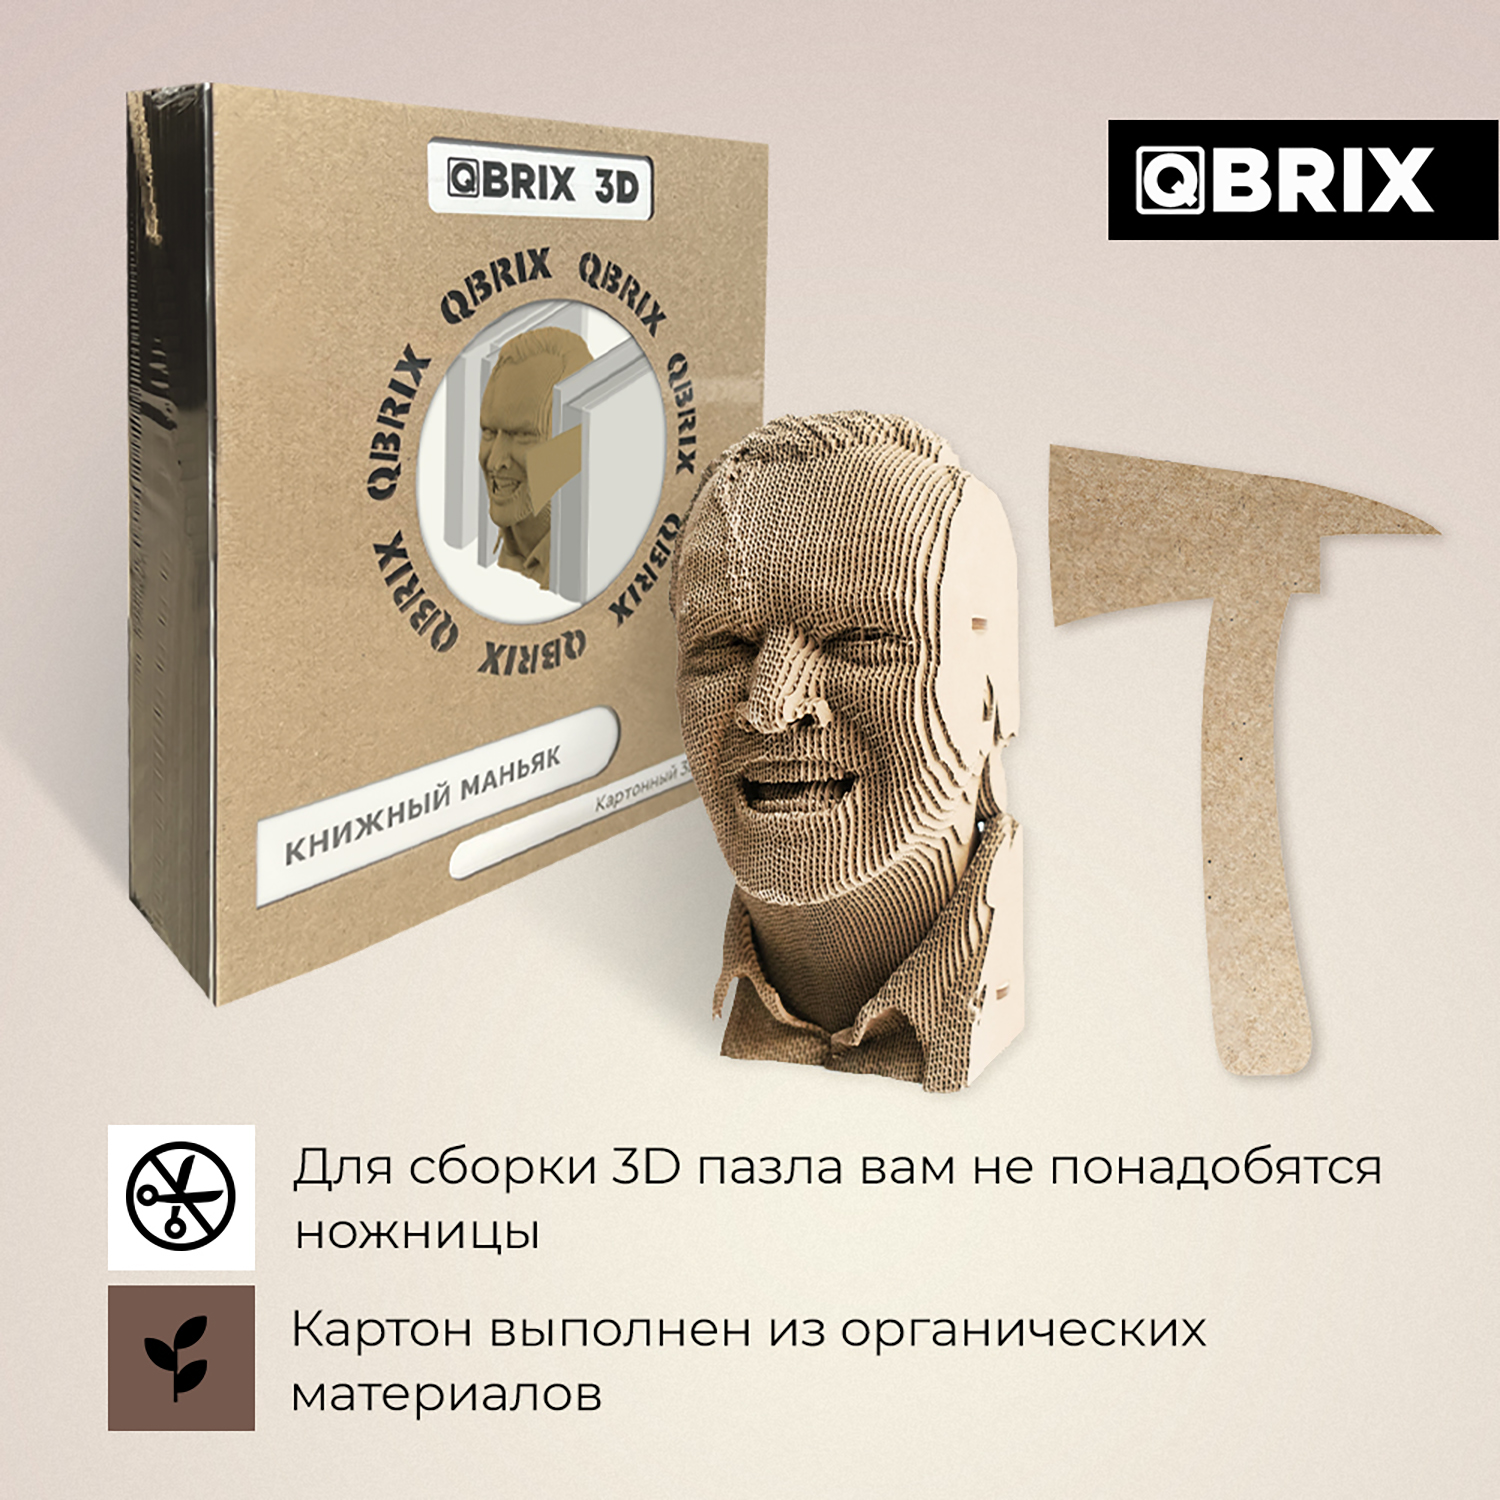 Конструктор QBRIX 3D картонный Книжный Маньяк 20006 20006 - фото 3